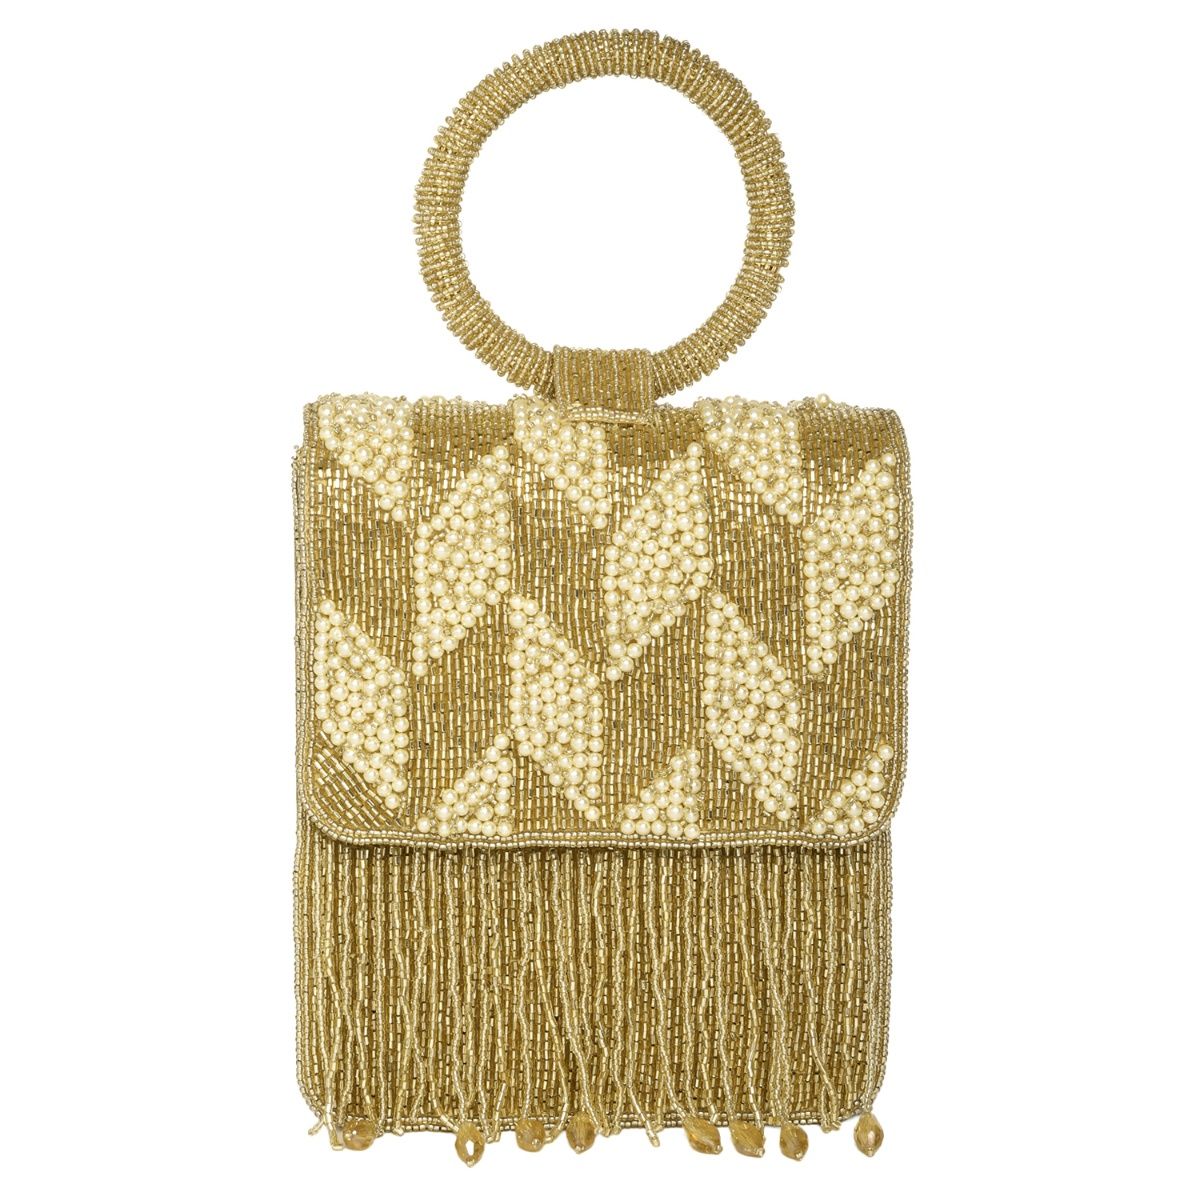 New Women Evening Clutch Bag Rhinestone Crystal Bucket Party Purse W  Tassel/Gold | eBay